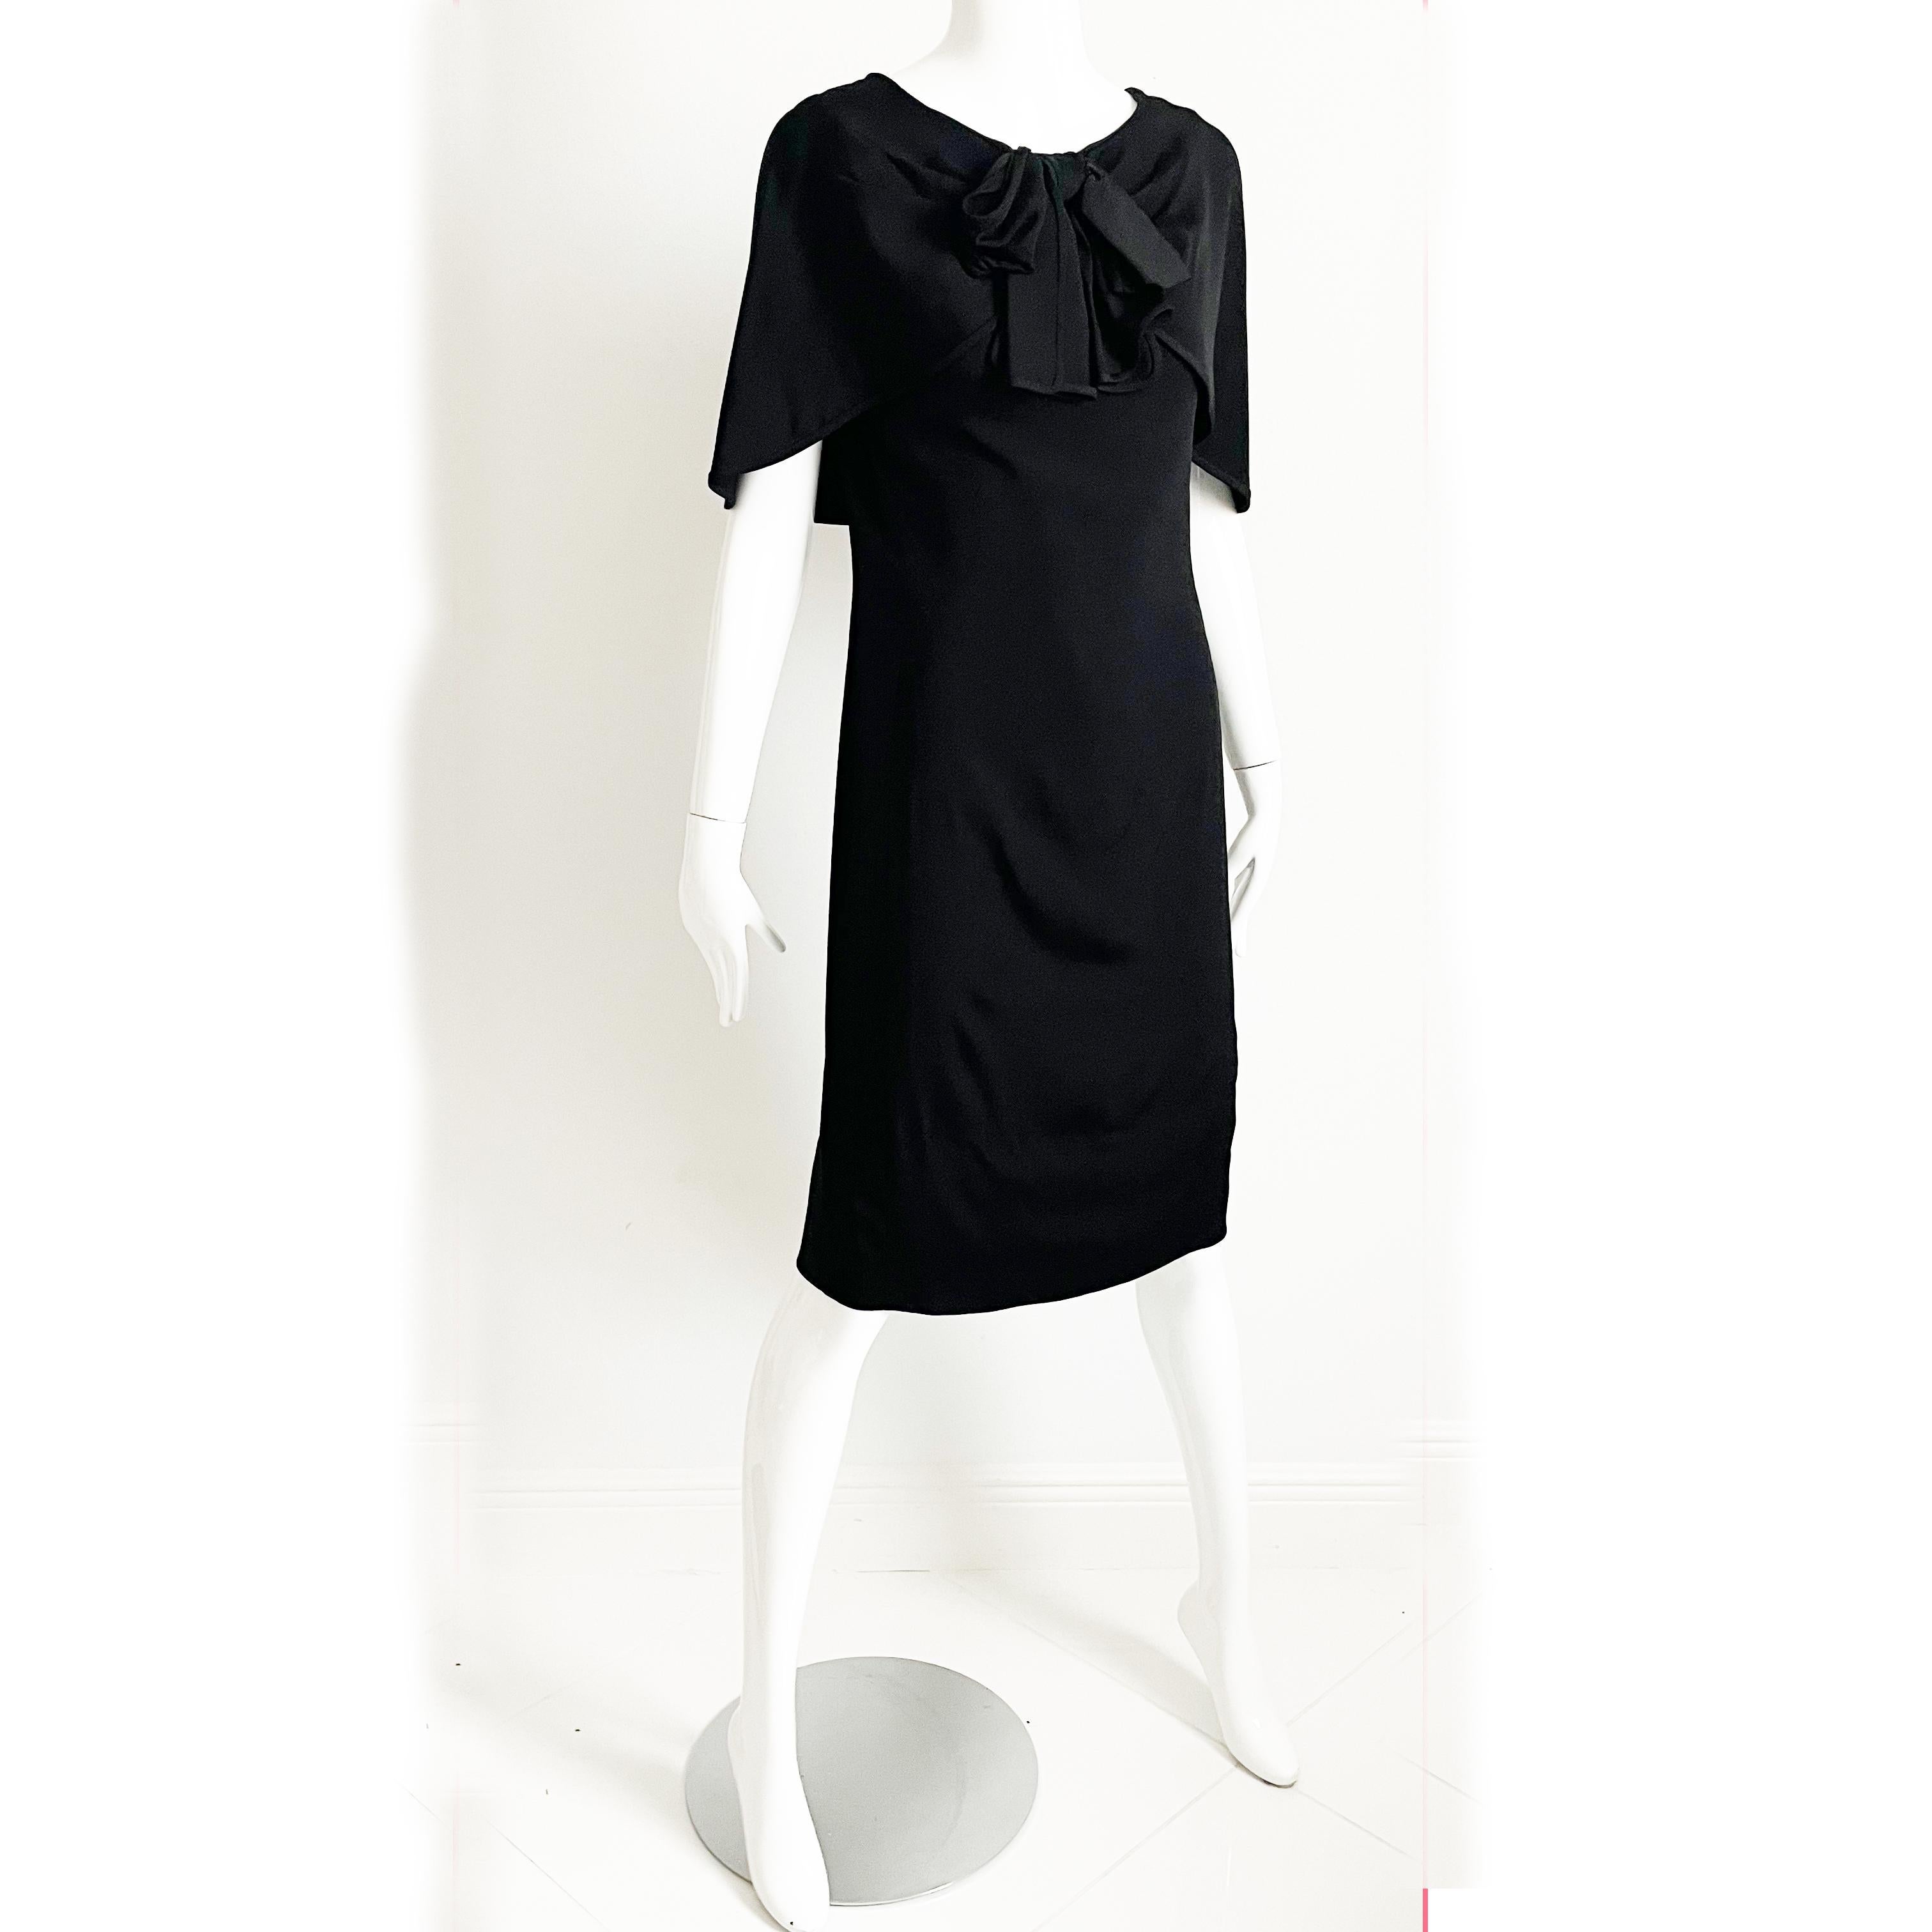 Cette incroyable petite robe noire est une des premières pièces de Pauline Trigere, datant des années 1950. 

Confectionné dans une étoffe de soie noire souple, il présente un col châle drapé avec un nœud en soie noire sur la poitrine et un dos à la